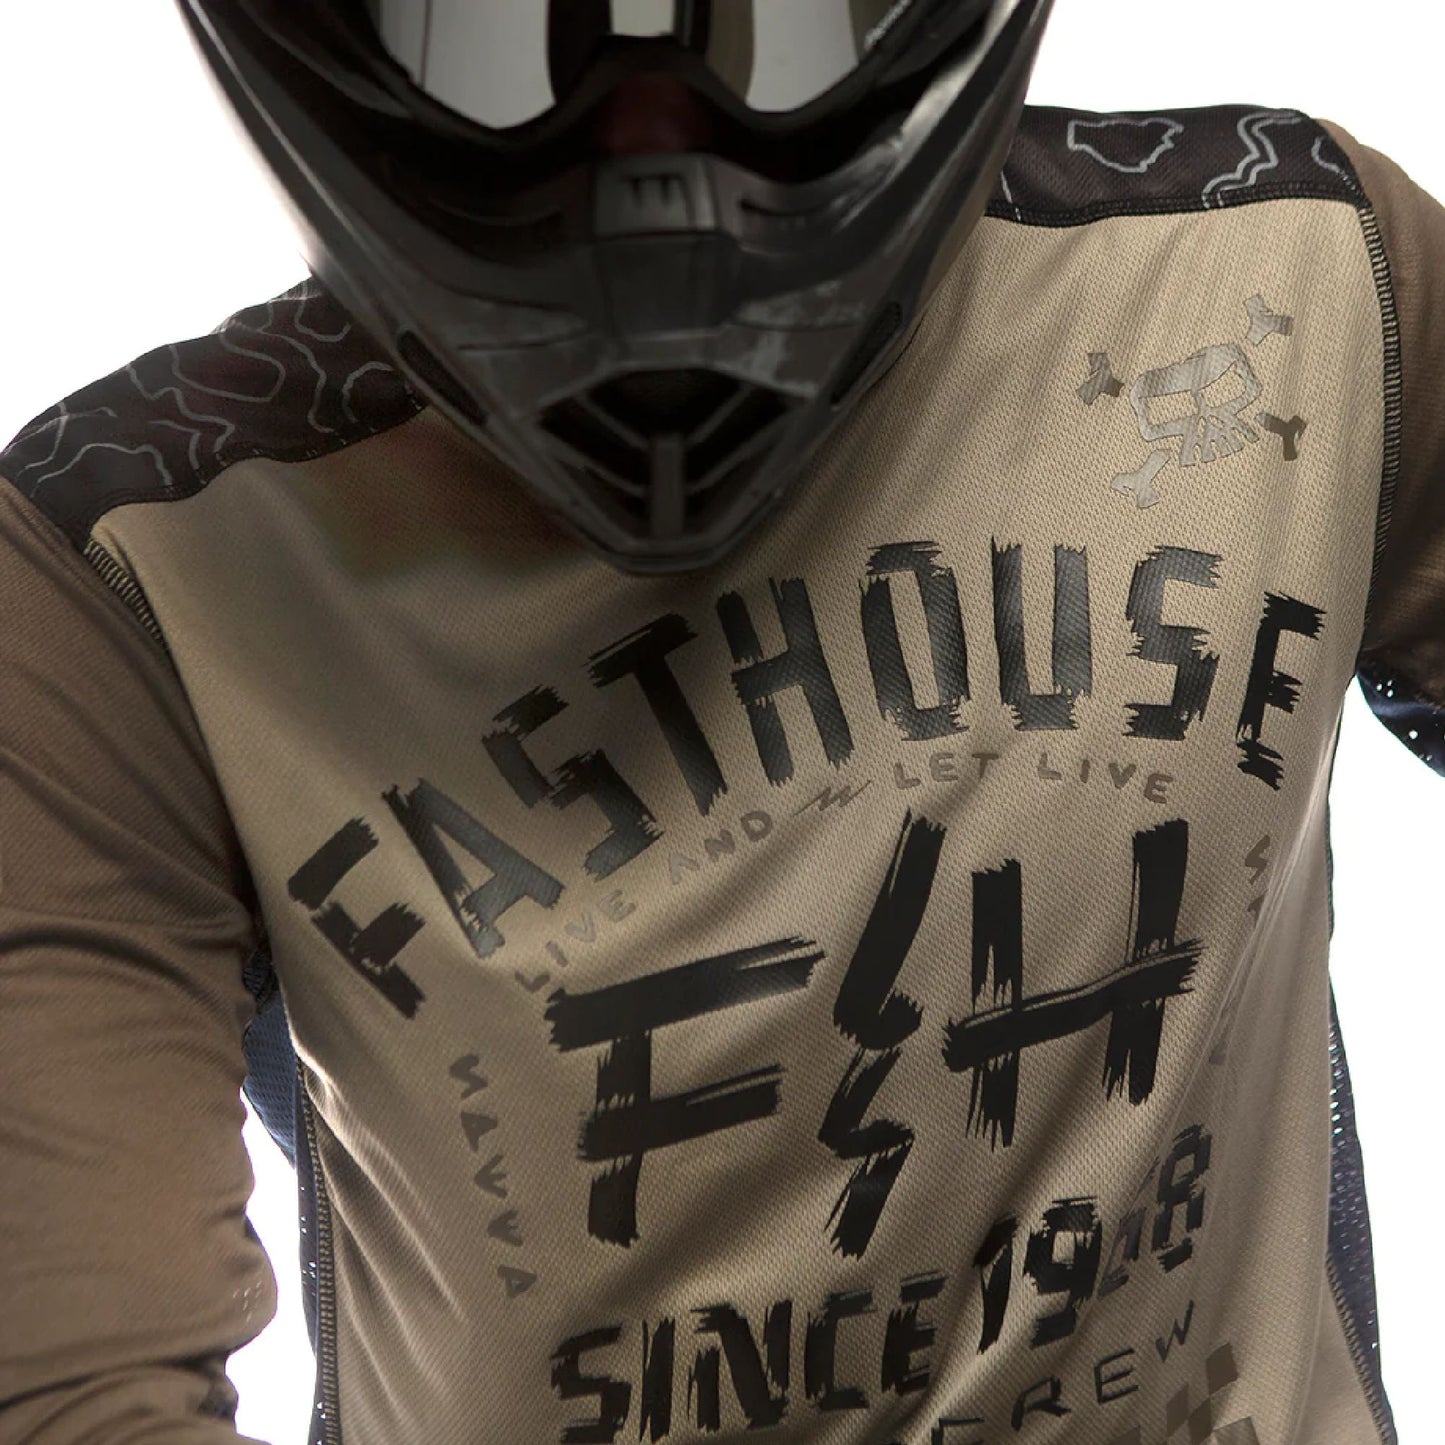 Fasthouse Off-Road Jersey Moss/Black Bike Jerseys